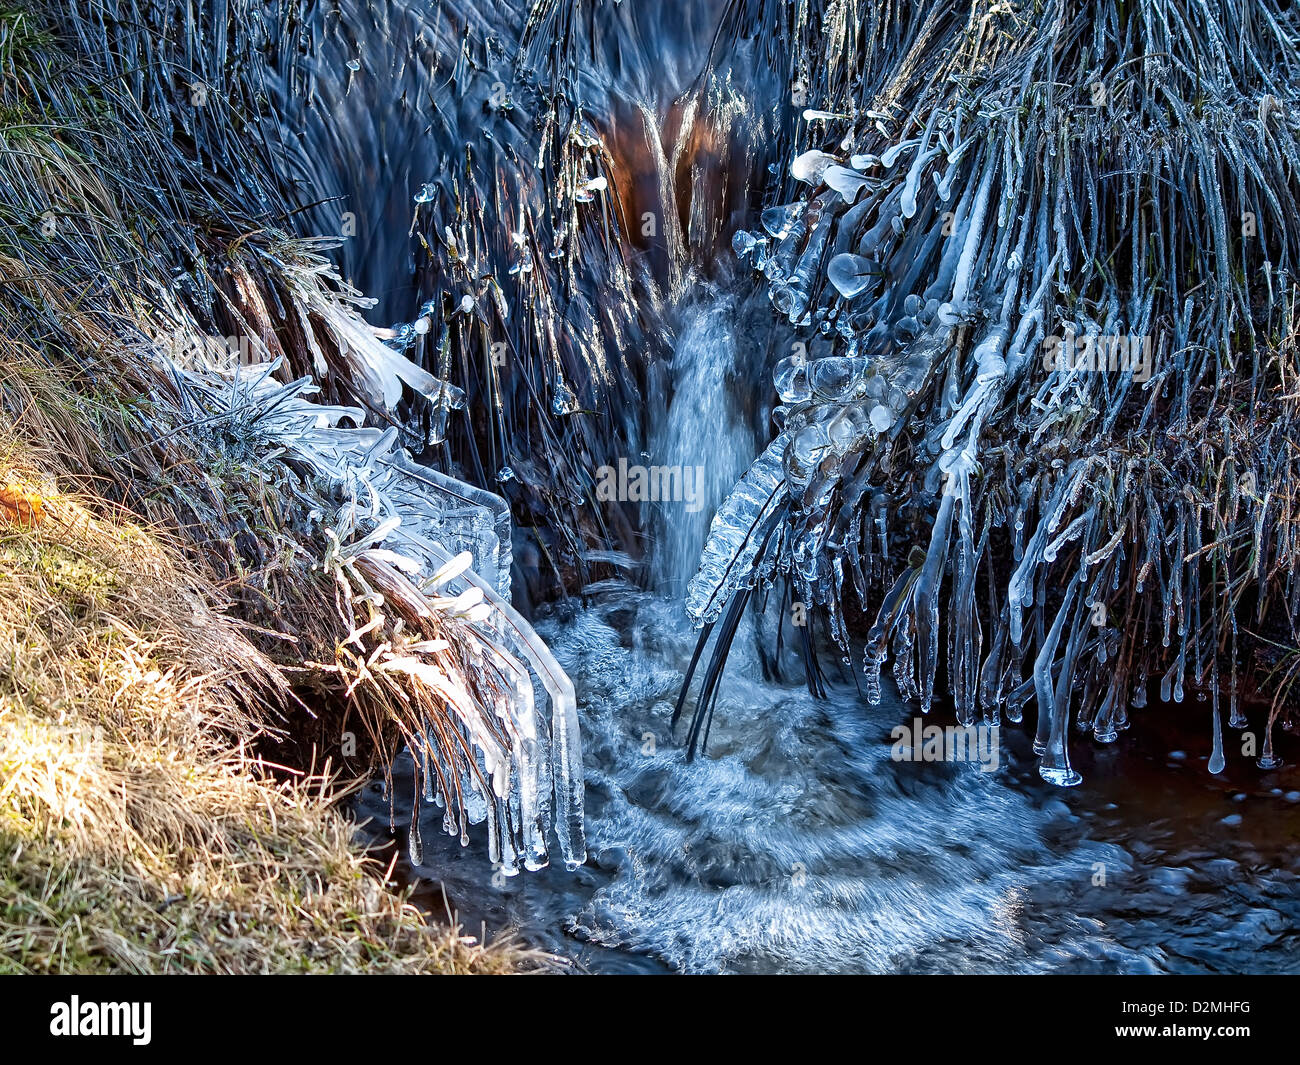 Arroyo congelado en páramos. Foto de stock